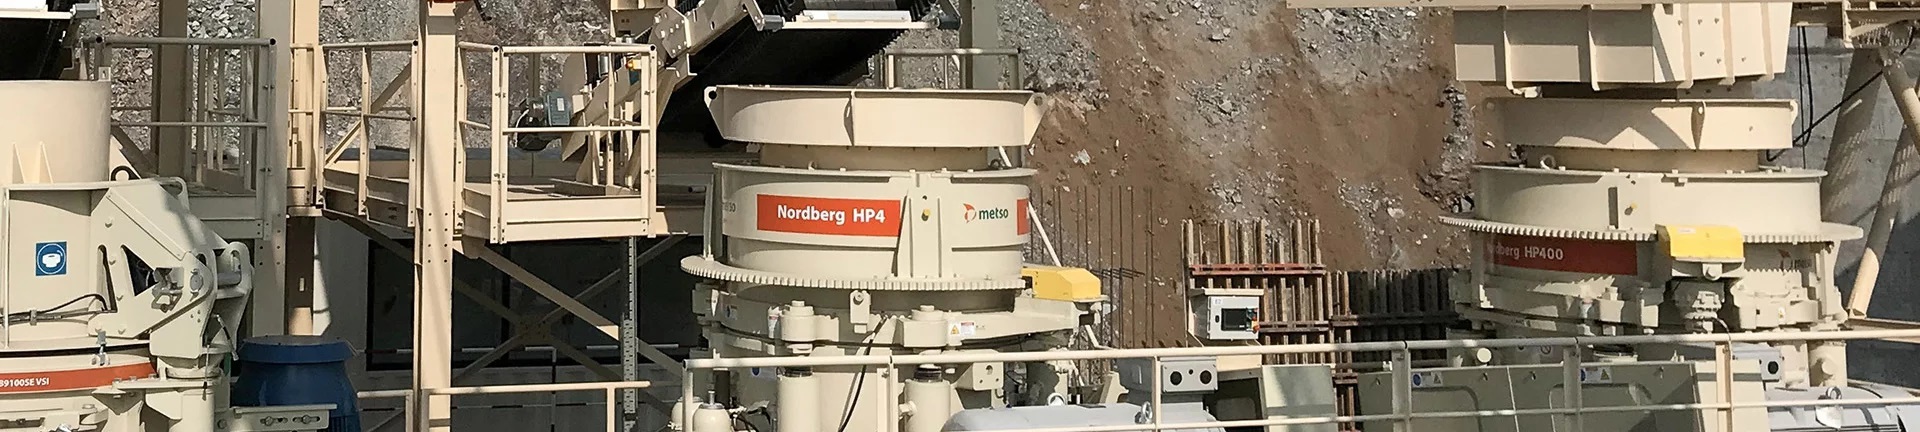 hp4 - metso nordberg hp4 - China metso nordberg cone crusher